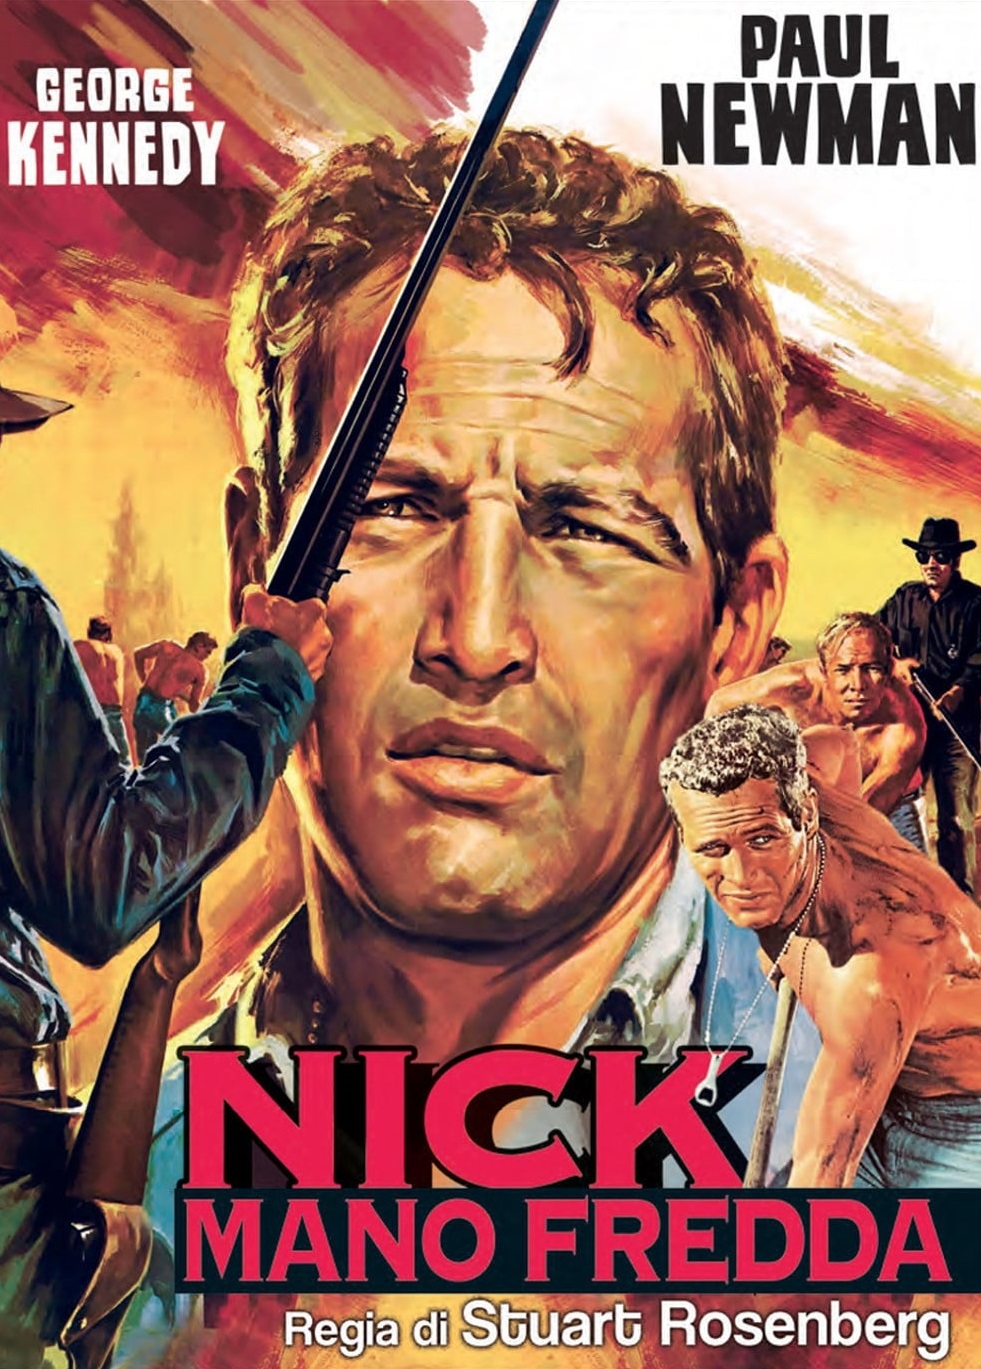 Nick mano fredda [HD] (1967)